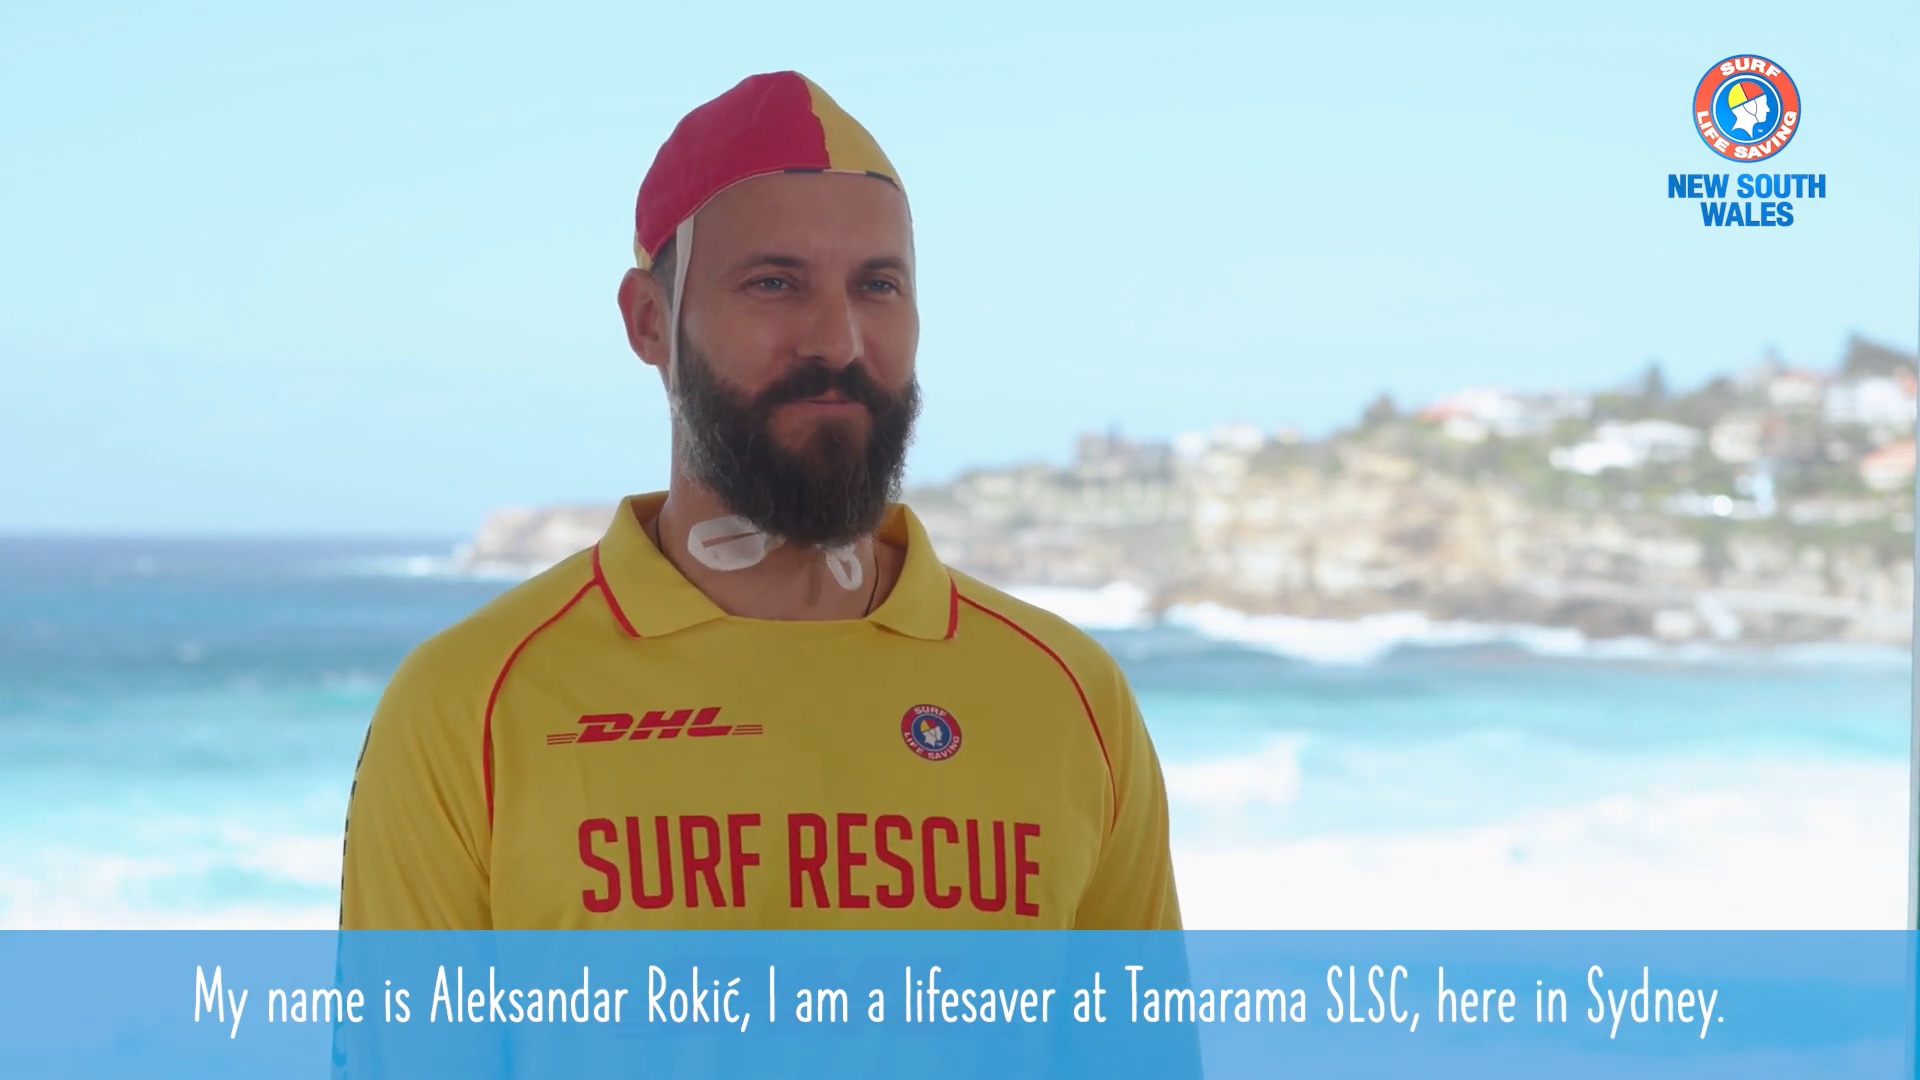 Meet A Lifesaver - Aleksandar Rokić